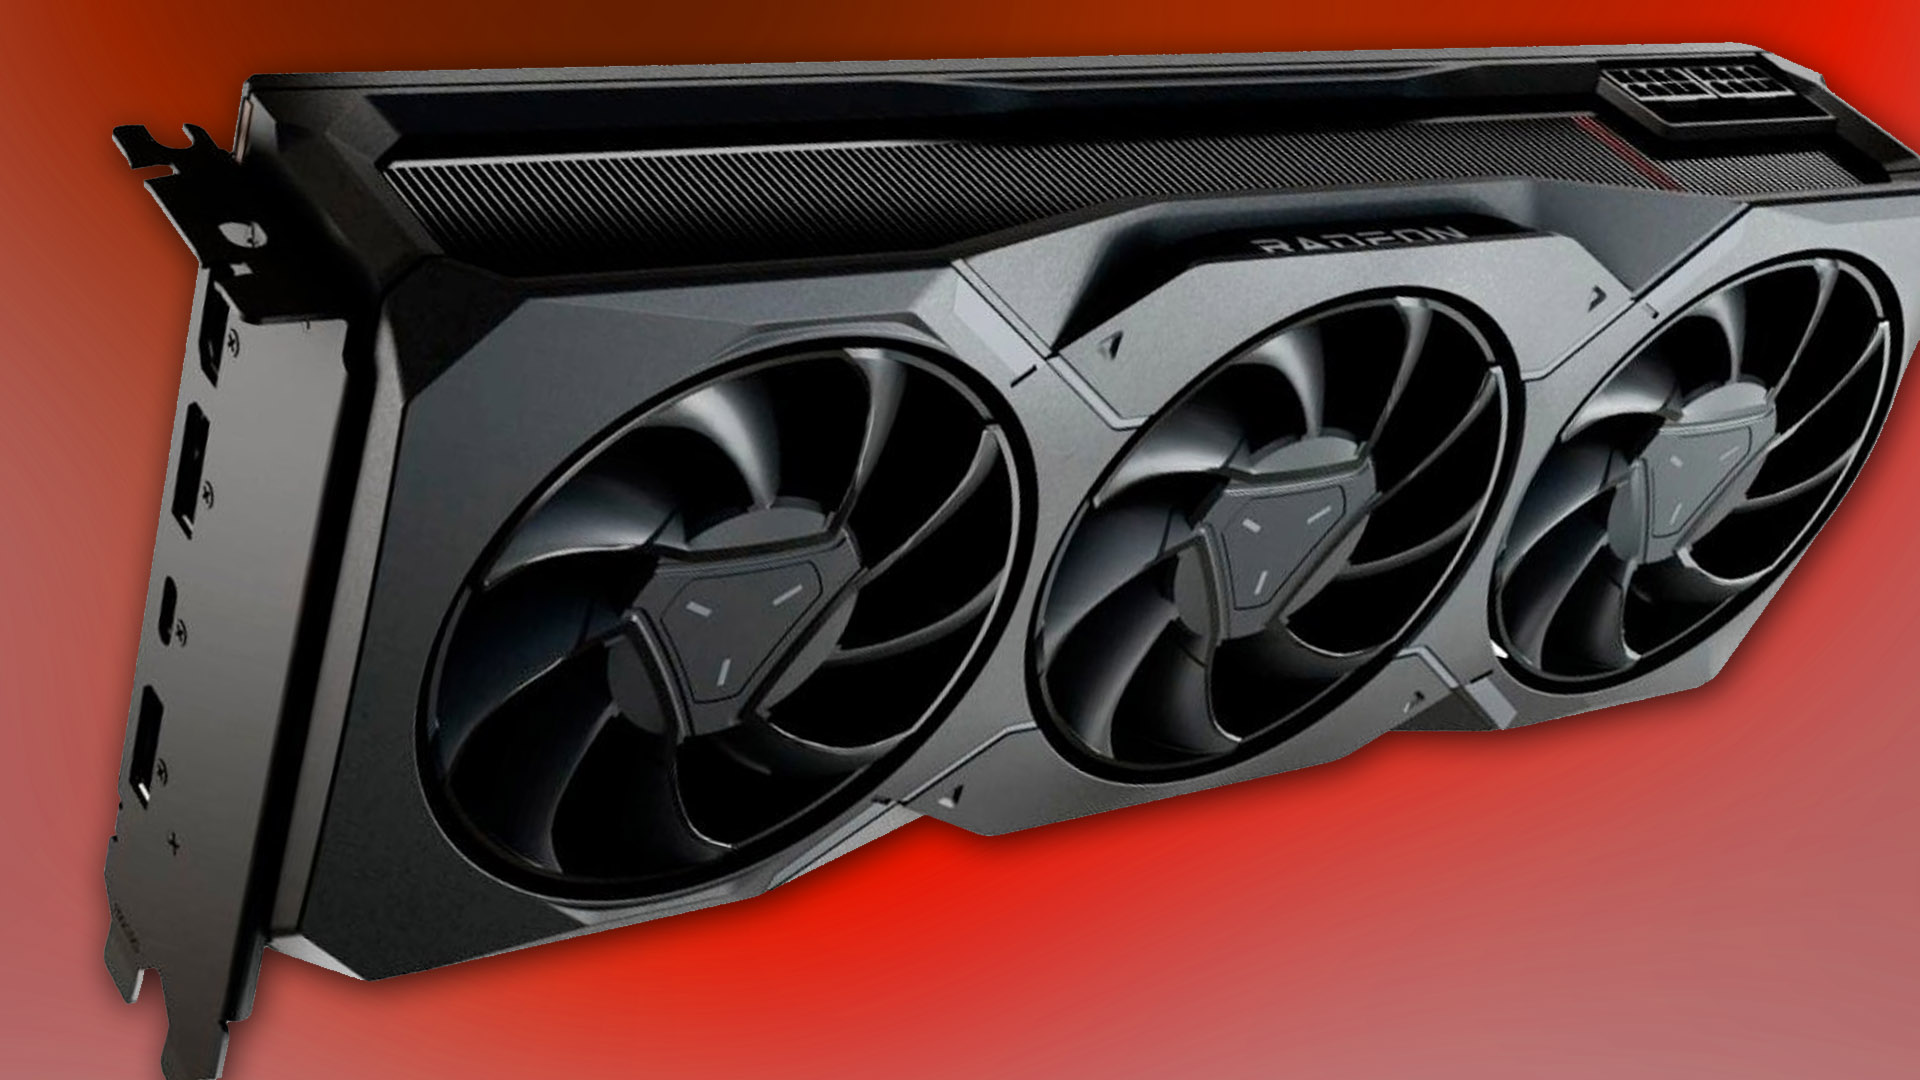 Prisen på Radeon RX 7900 XT synker med $100, som matcher 4070 Ti